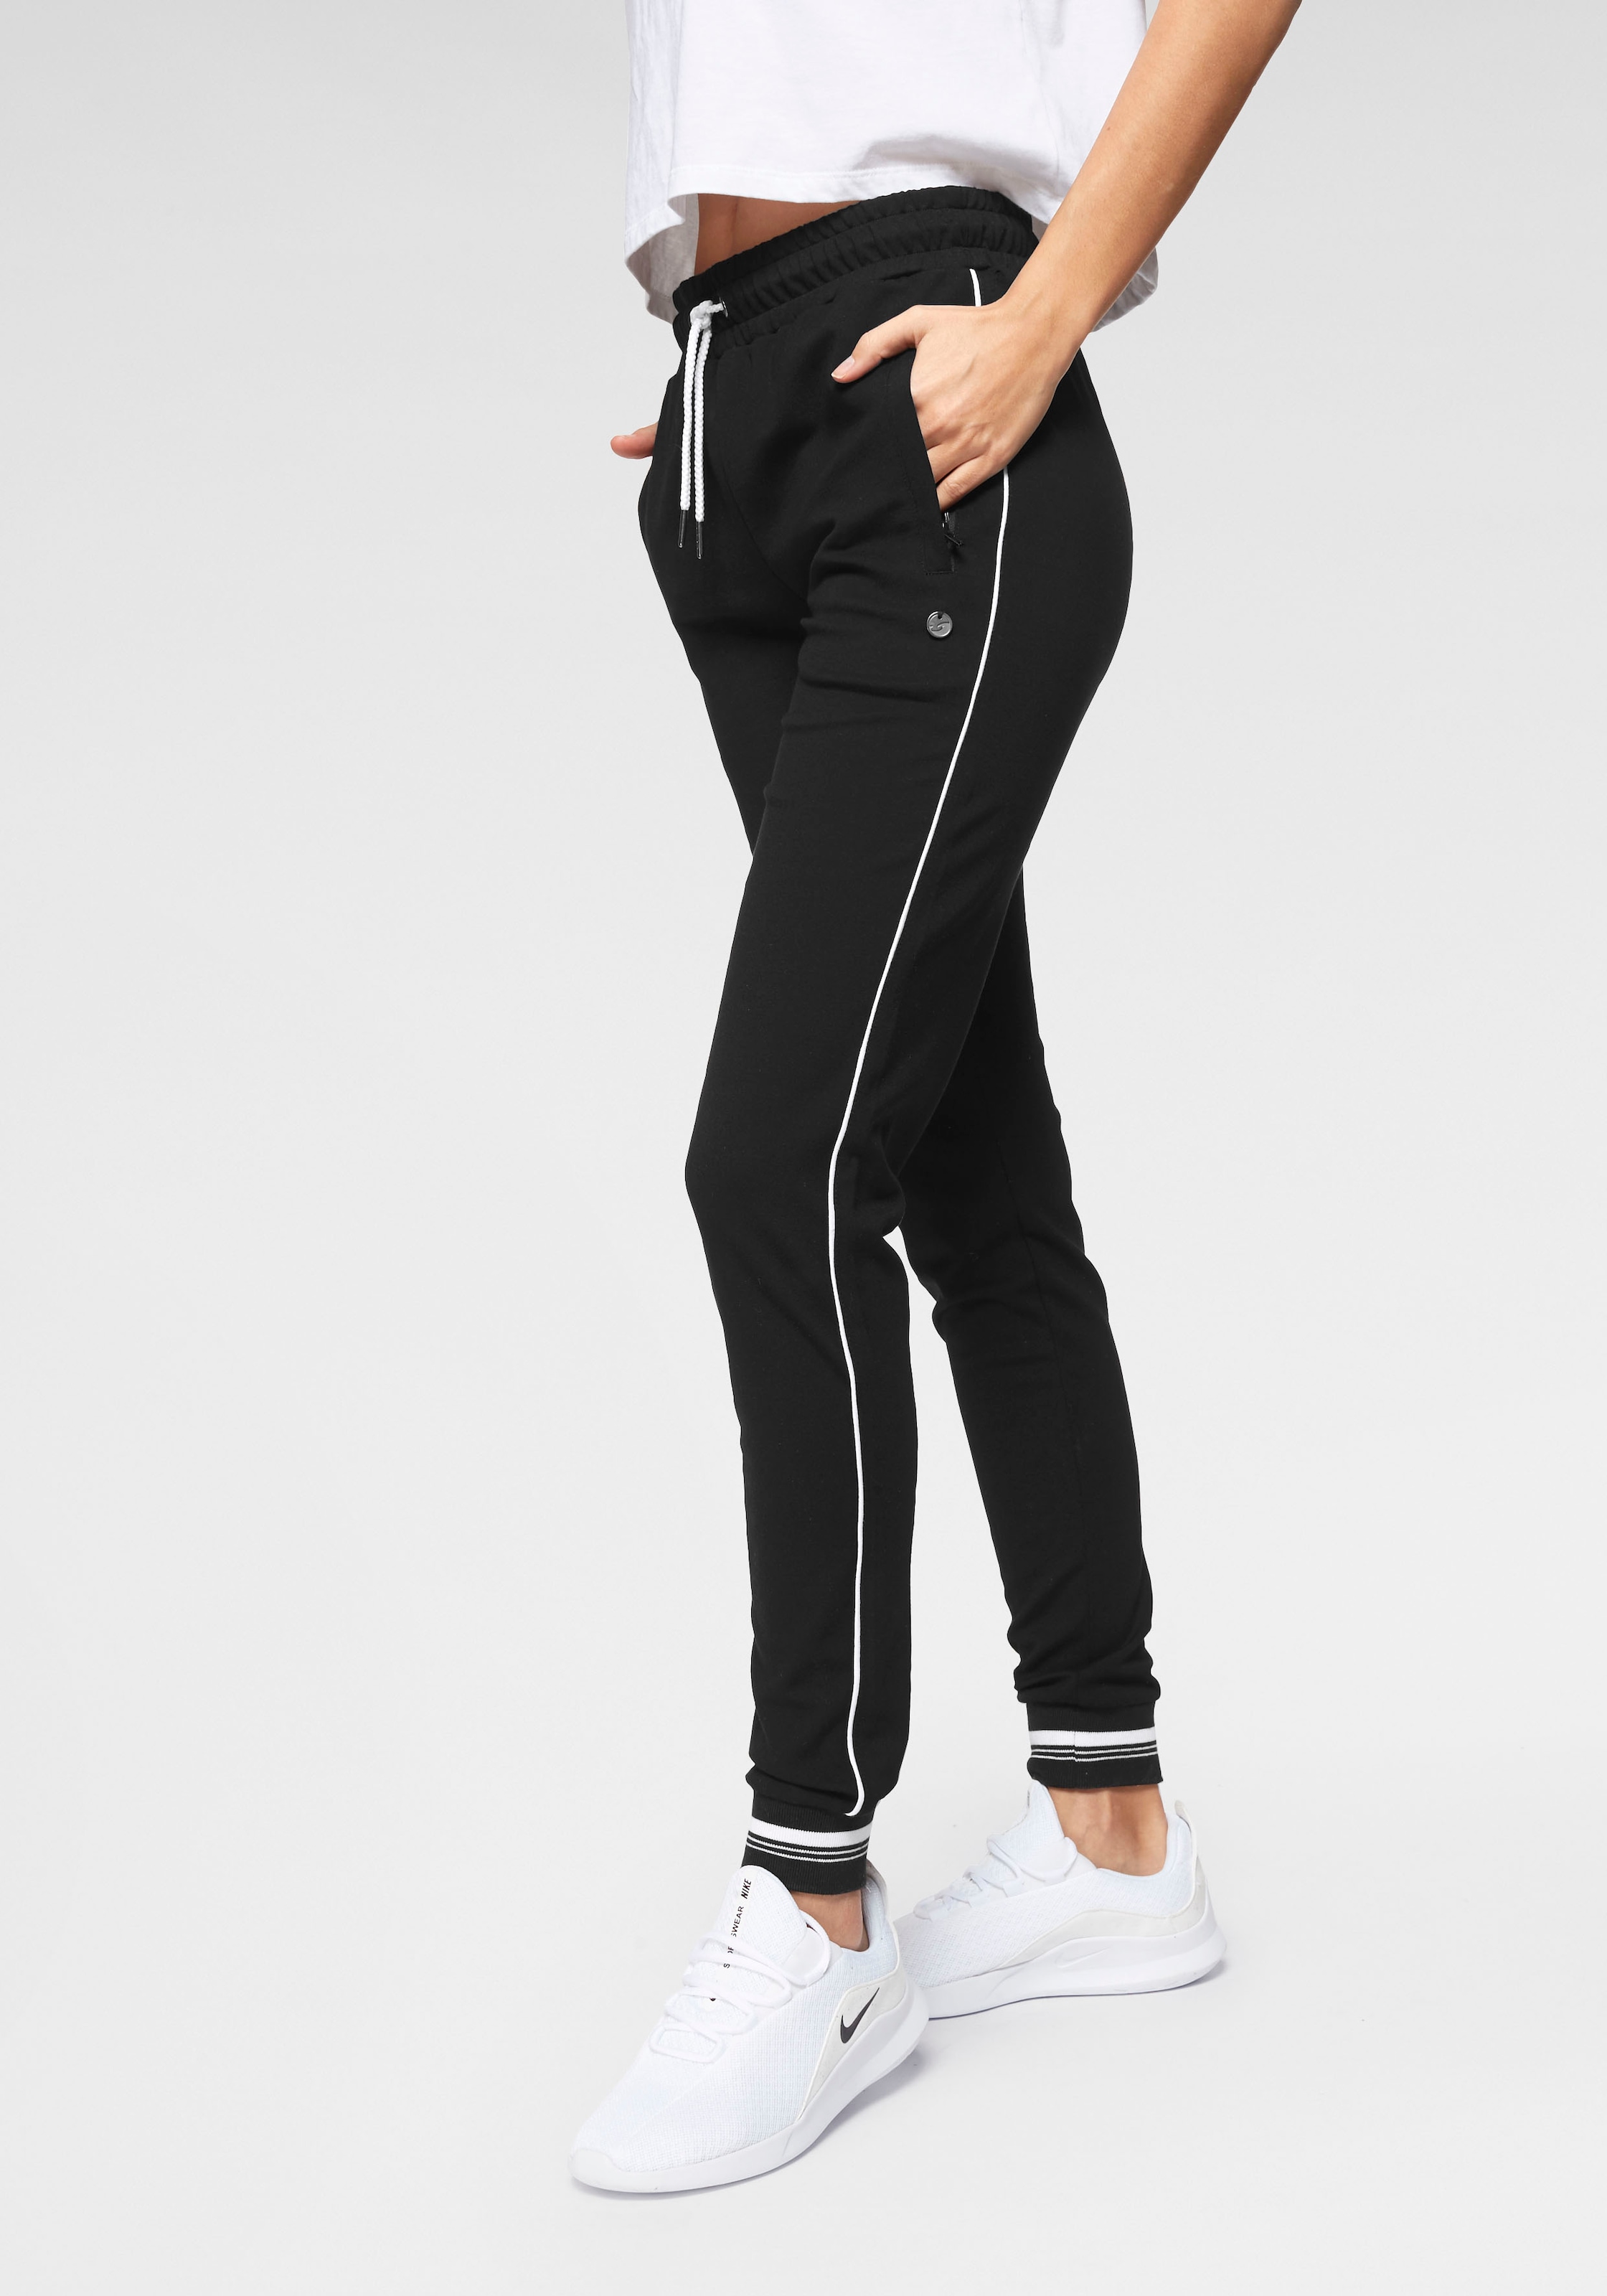 Paspeln mit Fit«, Ocean online seitlichen »Comfort Jogginghose Sportswear kaufen